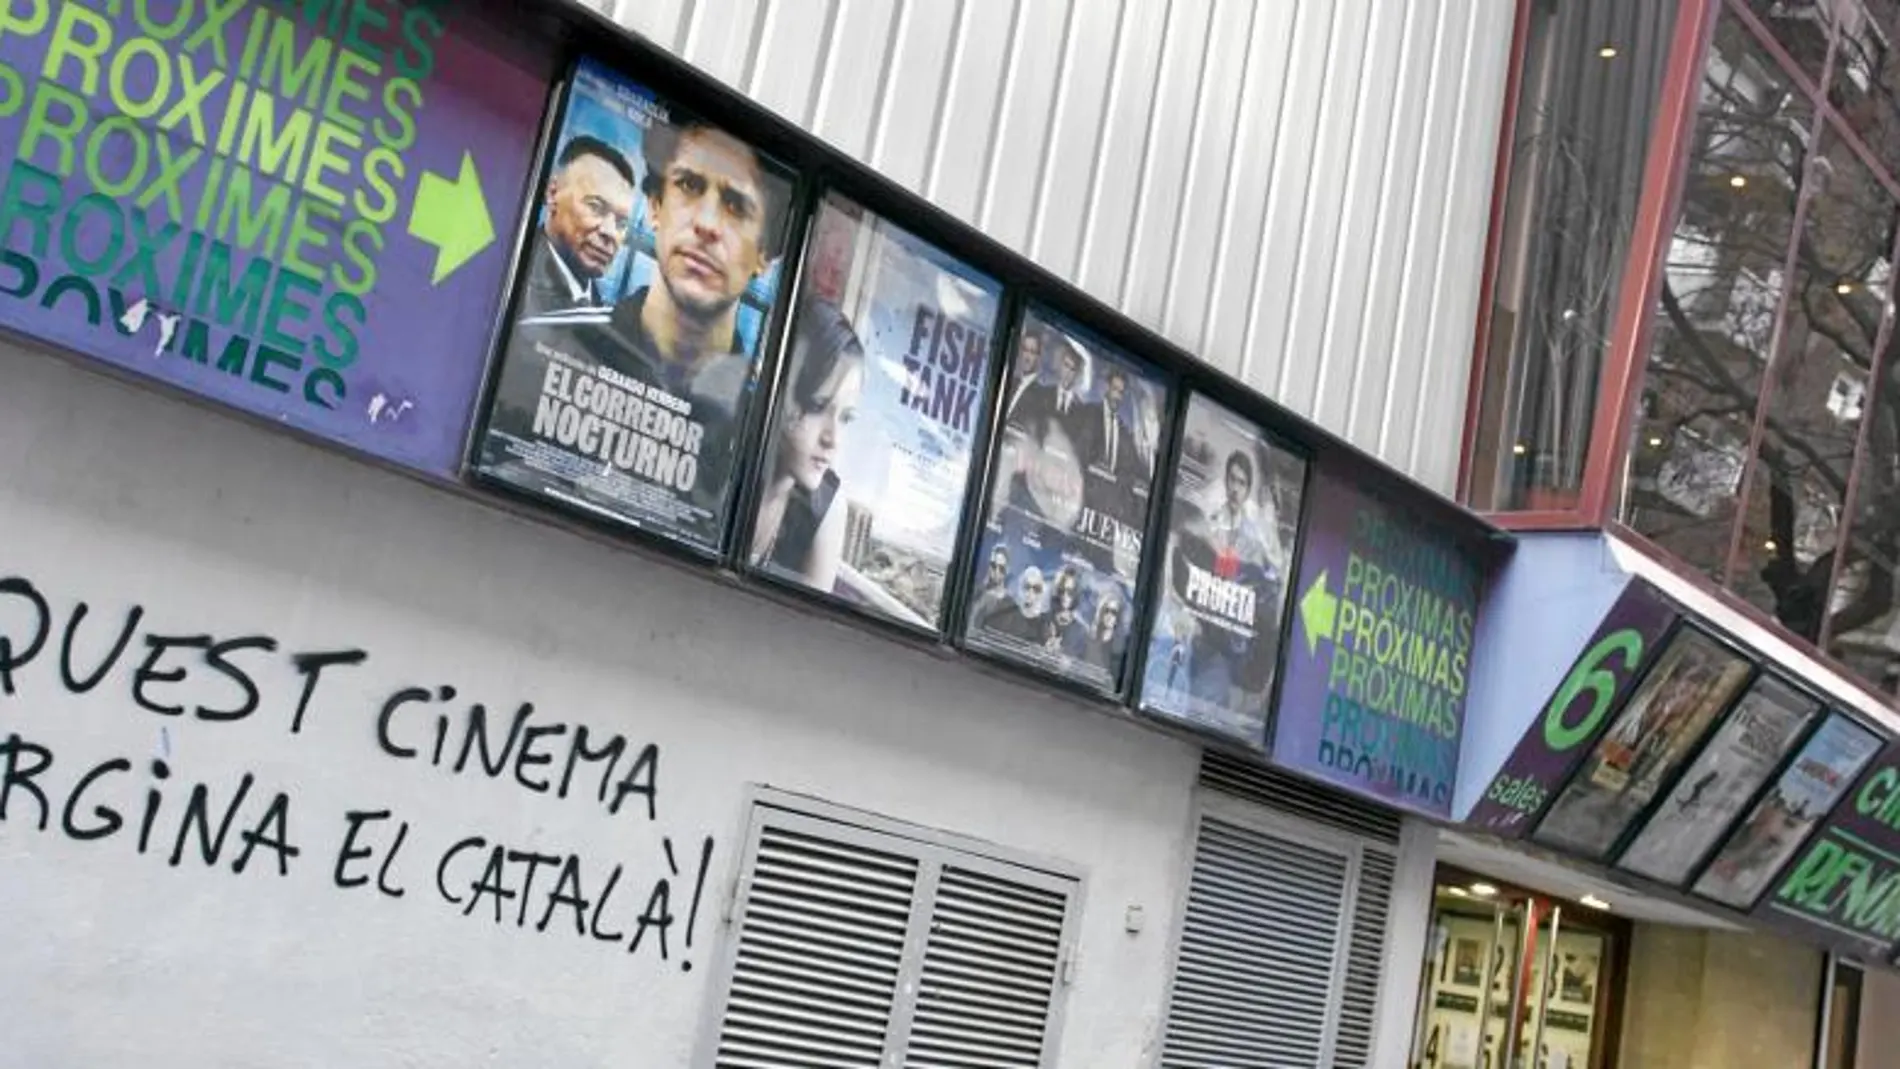 El cine se ha convertido en una de las principales herramientas estratégicas del Gobierno catalán